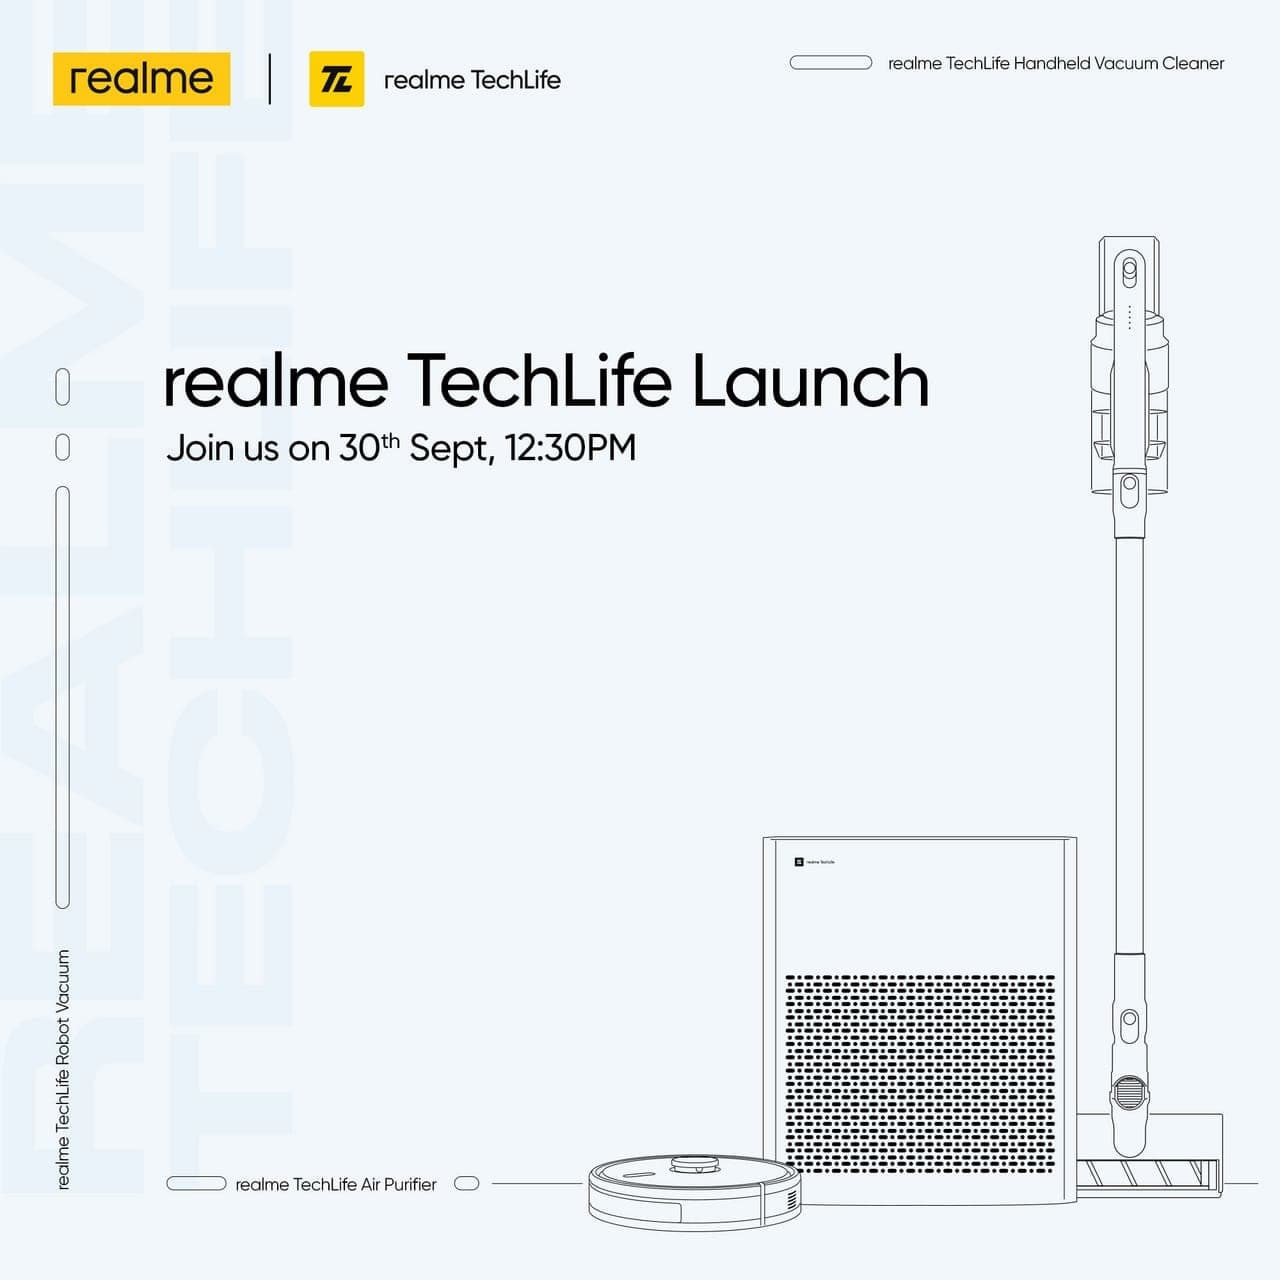 Realme تستعد لإطلاق منقي هواء ومكانس كهربائية جديدة في 30 سبتمبر بالهند